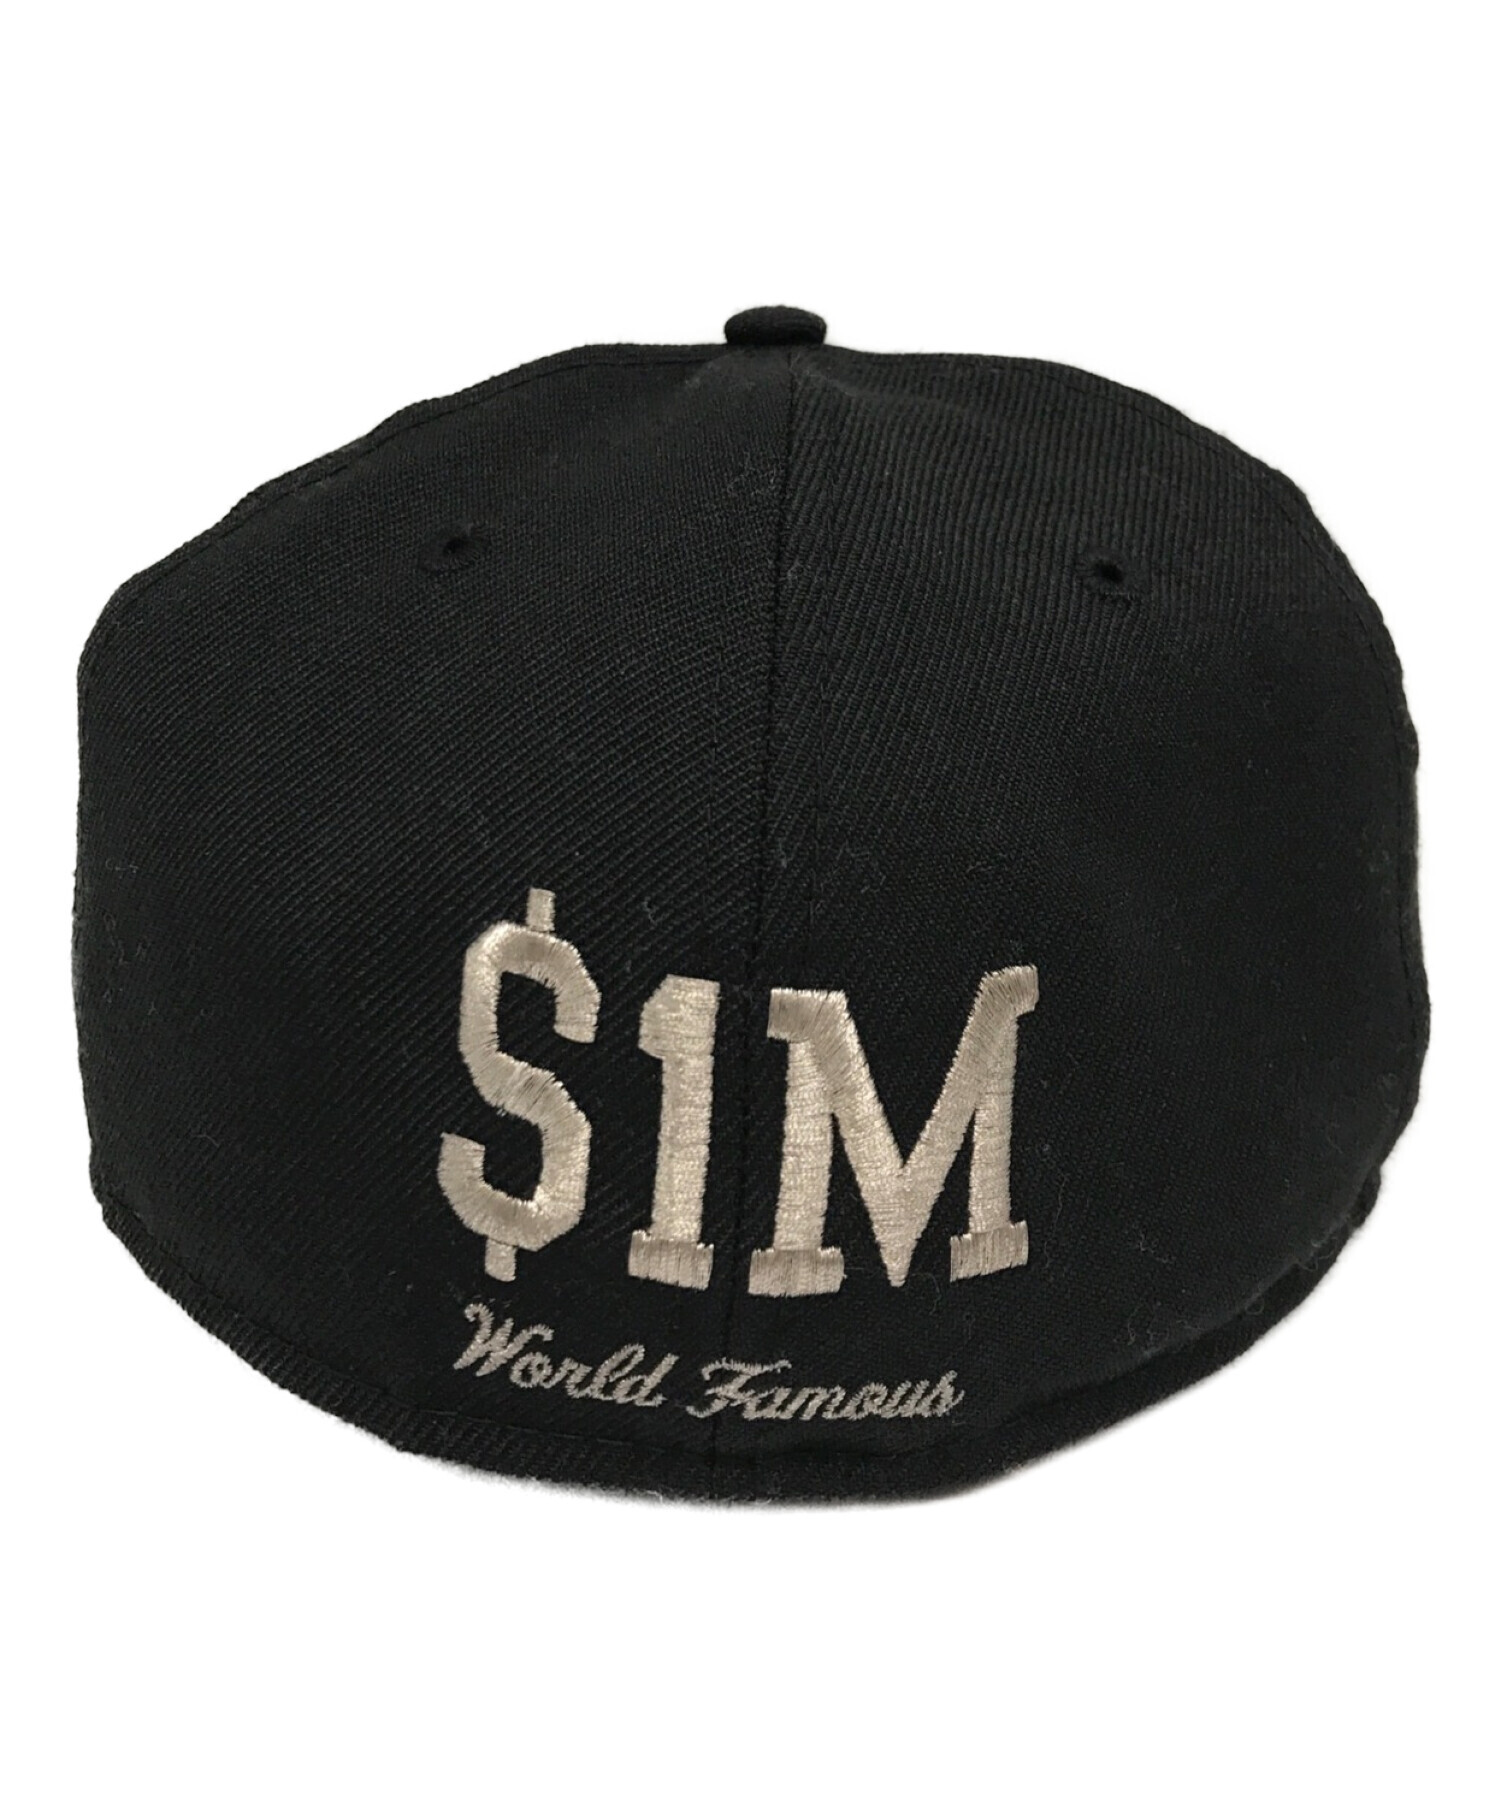 supreme $1M metallic box logo new era帽子